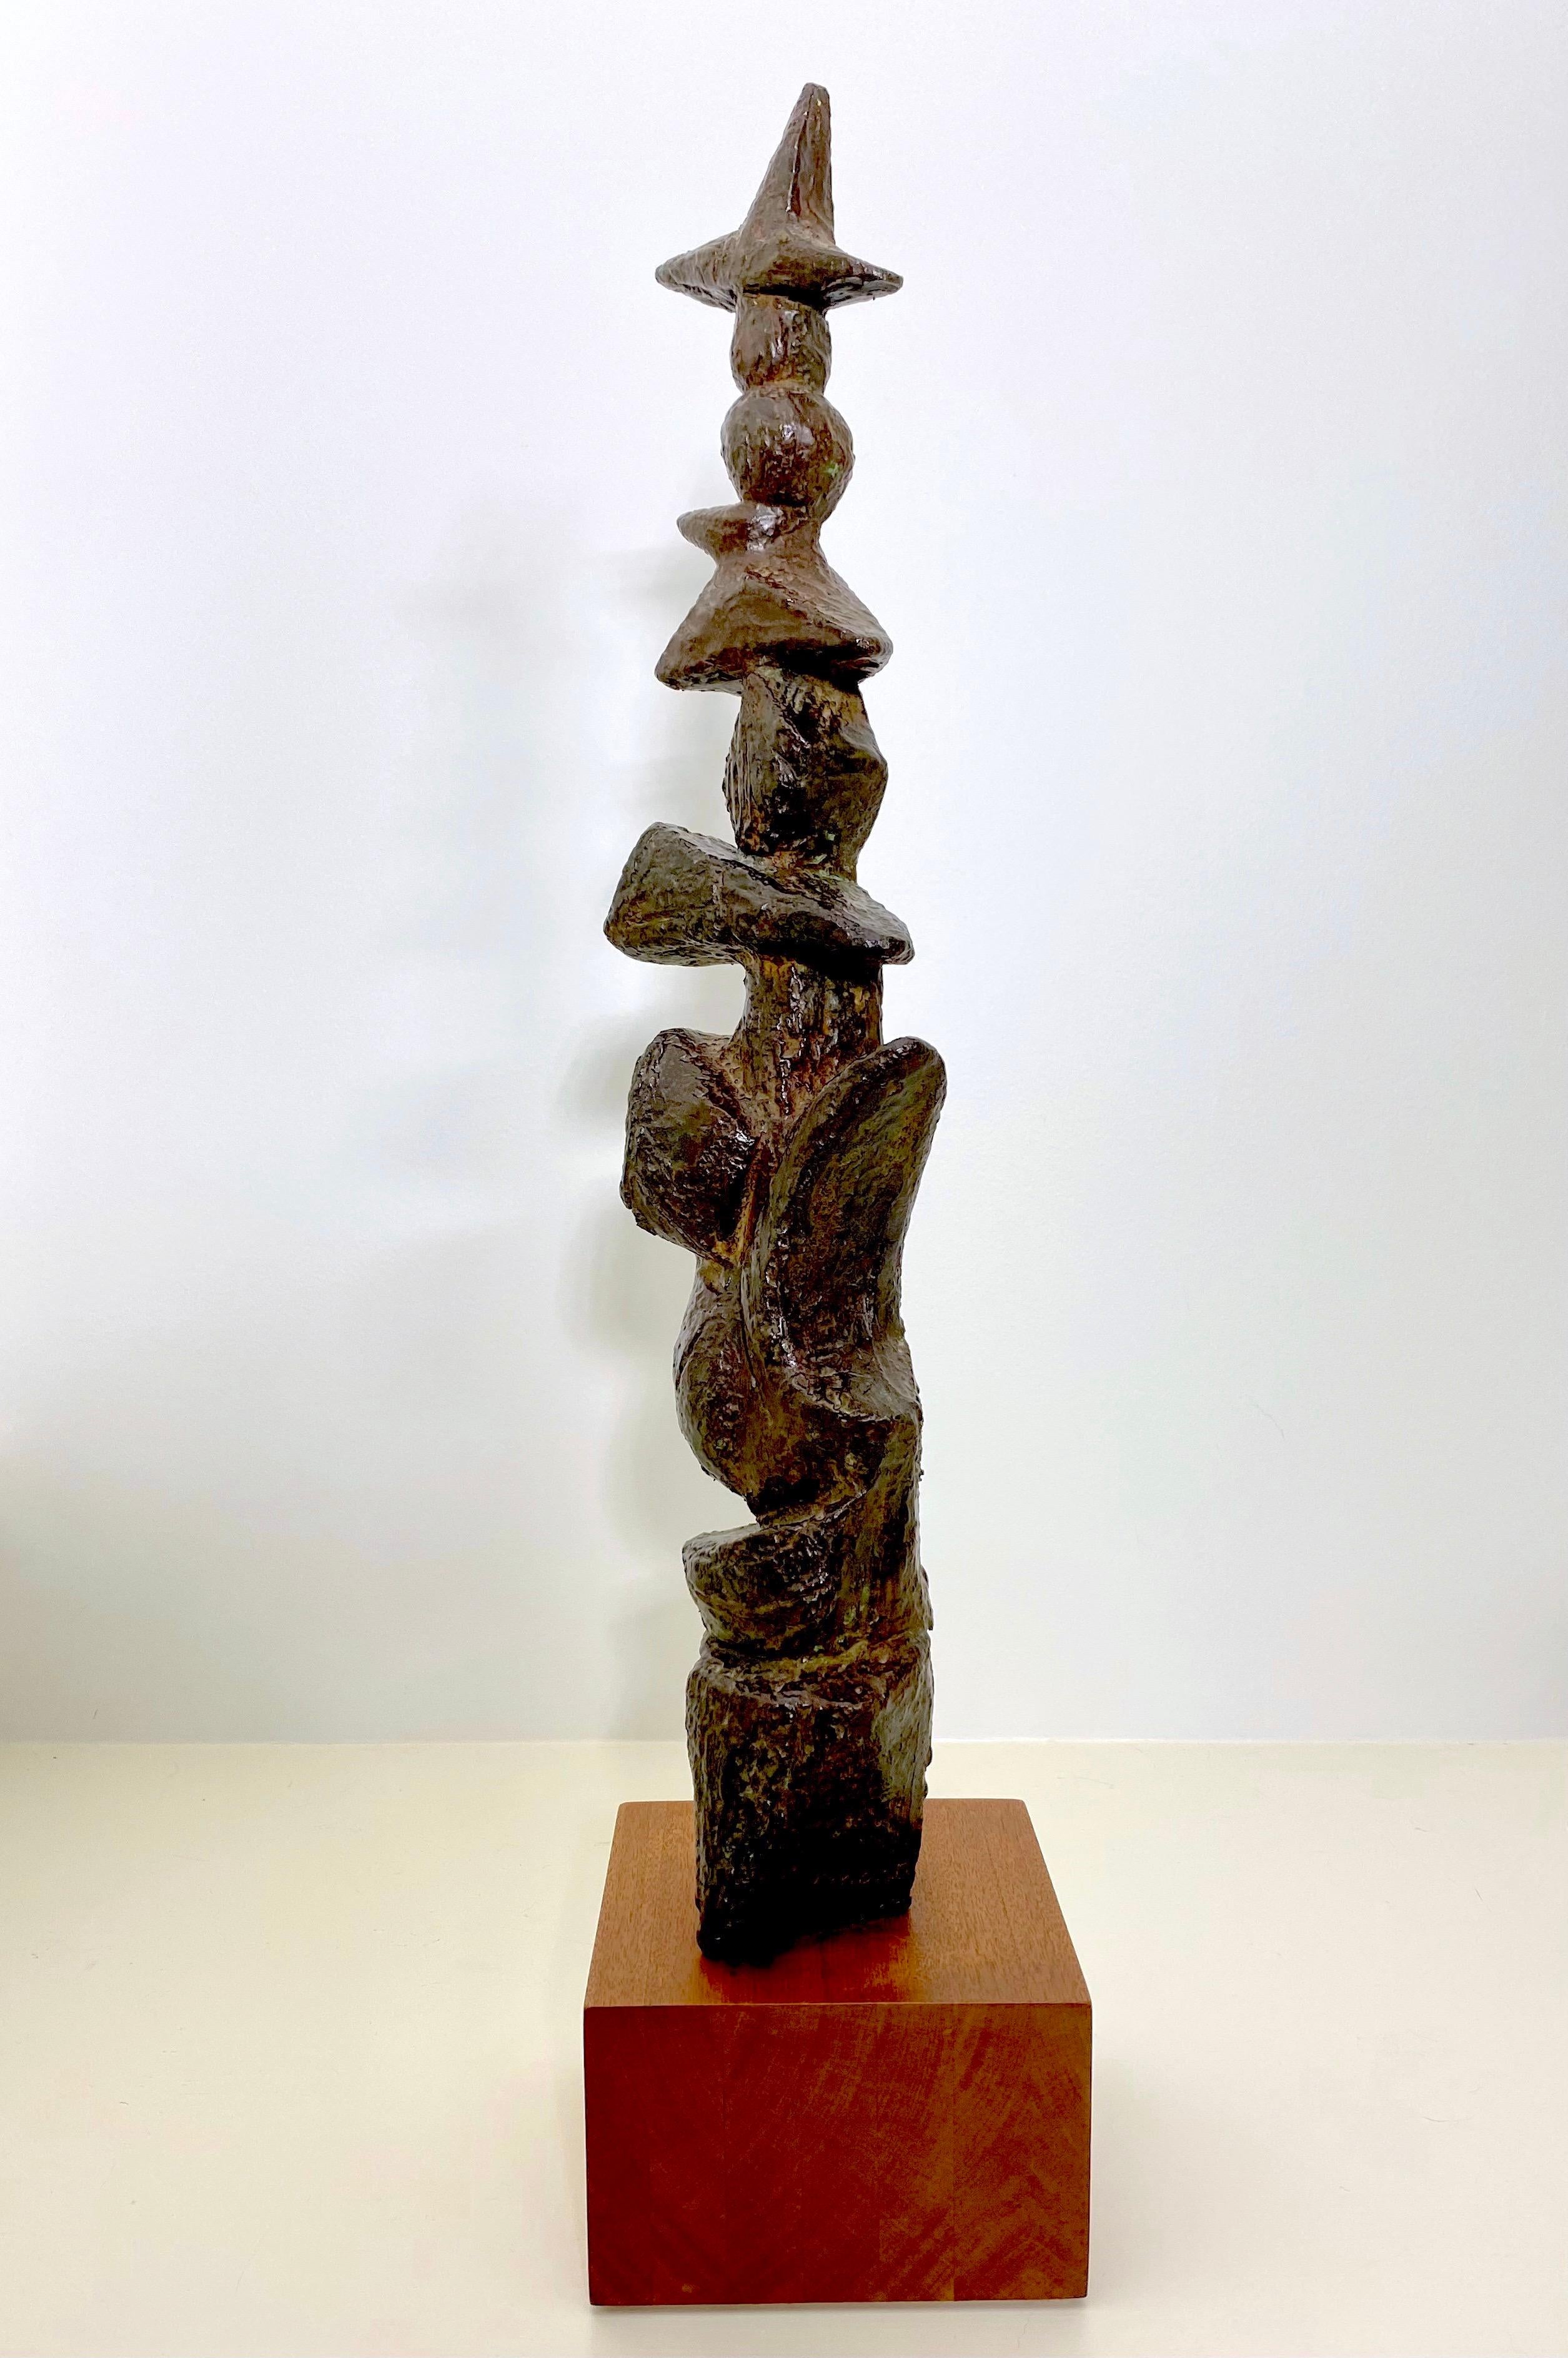 Hervorragende Marcel Marti (1925-2010) zugeschriebene abstrakte patinierte Bronzeskulptur, die aus jedem Blickwinkel einzigartig ist. Dies ist ein auffälliges Nachkriegskunstwerk aus den 50er Jahren in dunkler Bronze mit geätzten Linien in